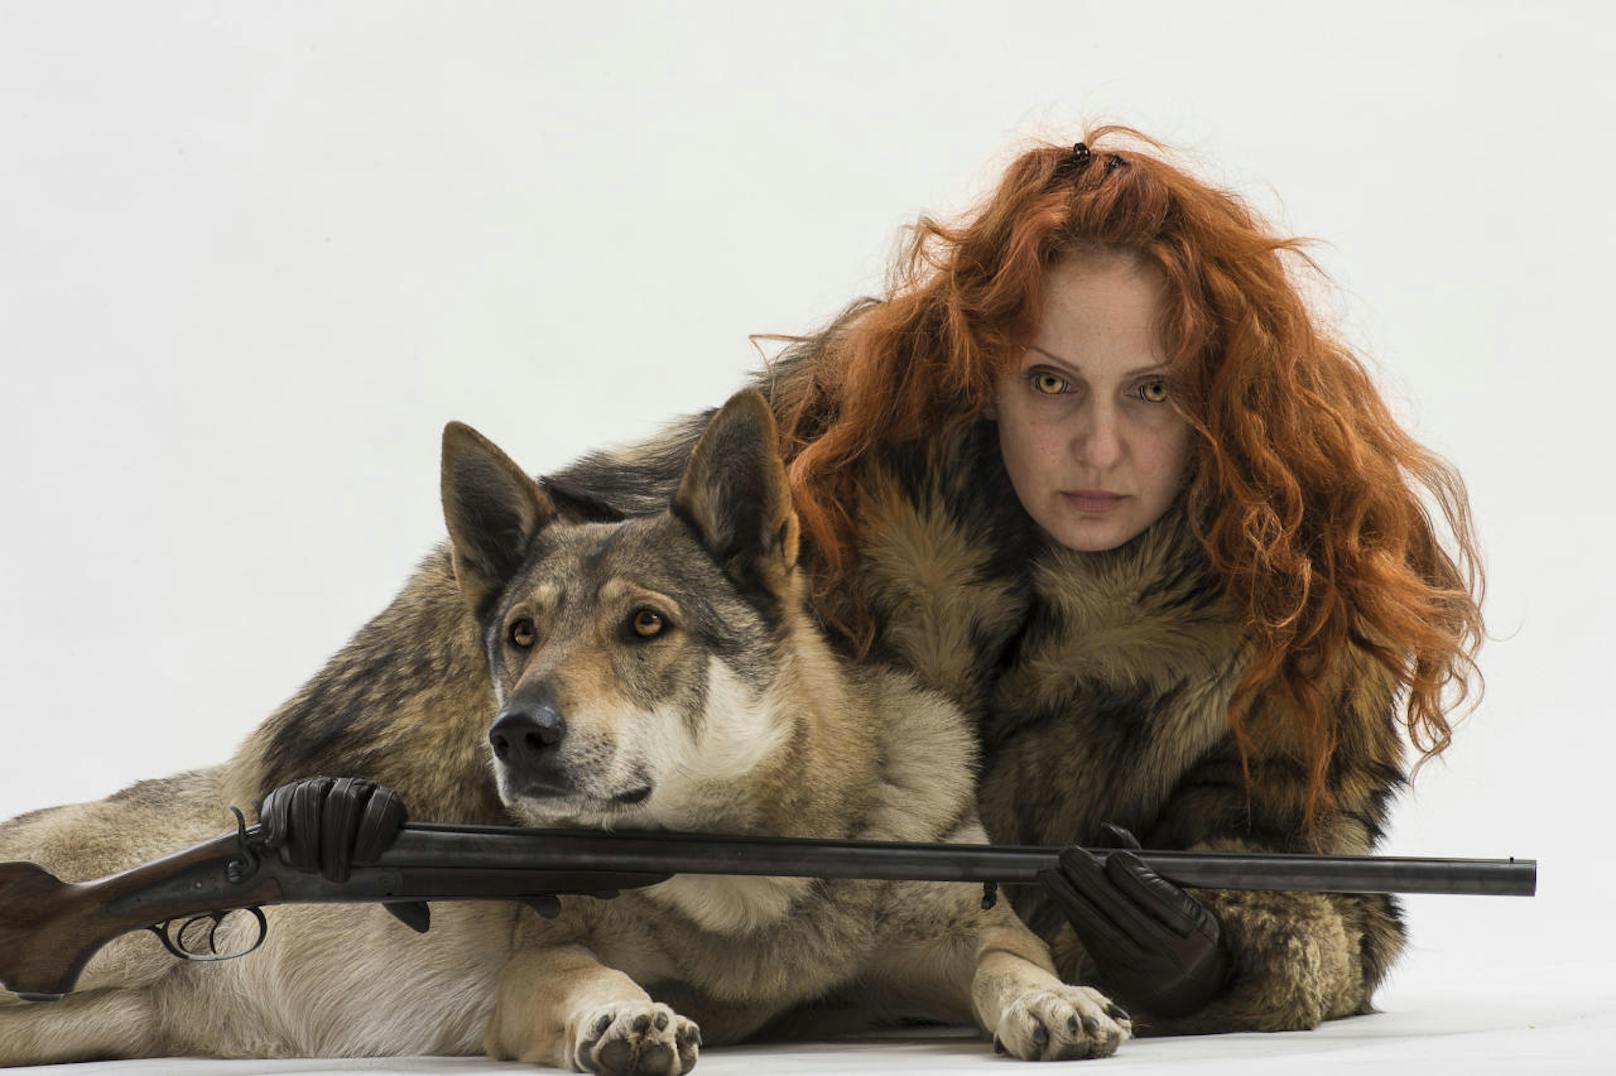 Maja Smrekar beschäftigt sich in ihrer Kunst auch mit der Beziehung von Wolf, Hund und Mensch.